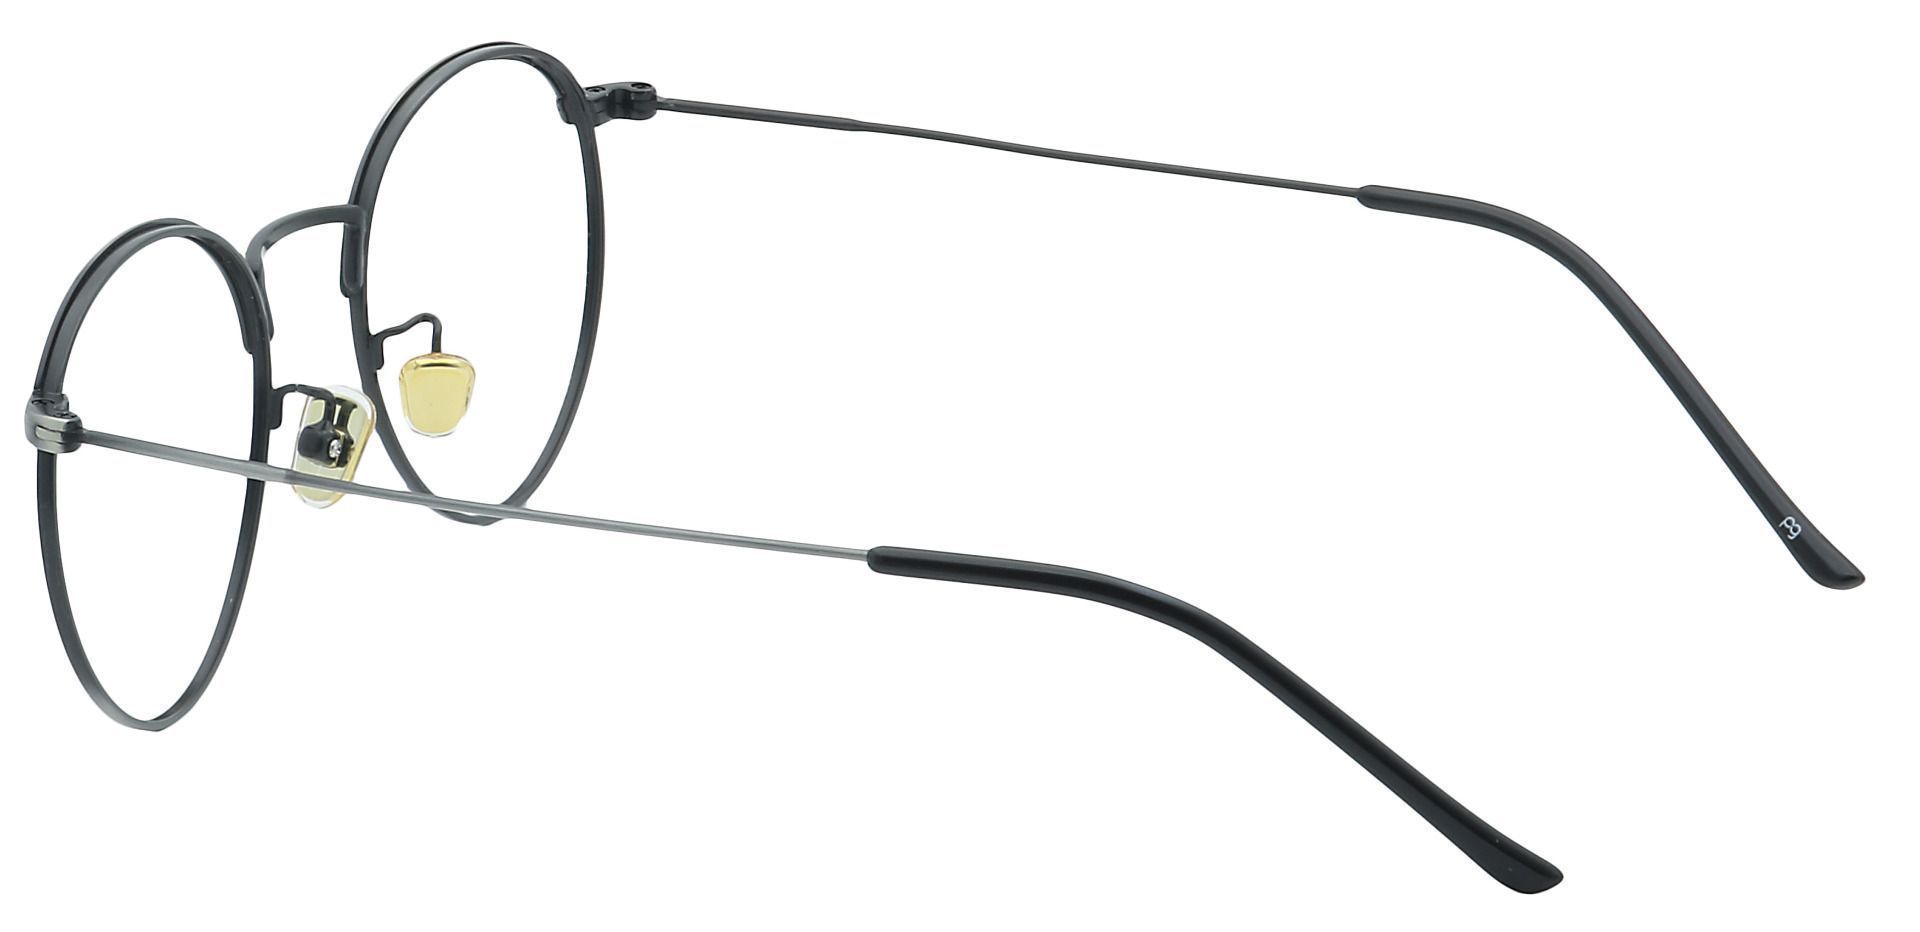 Cooper Oval Prescription Glasses - Gray